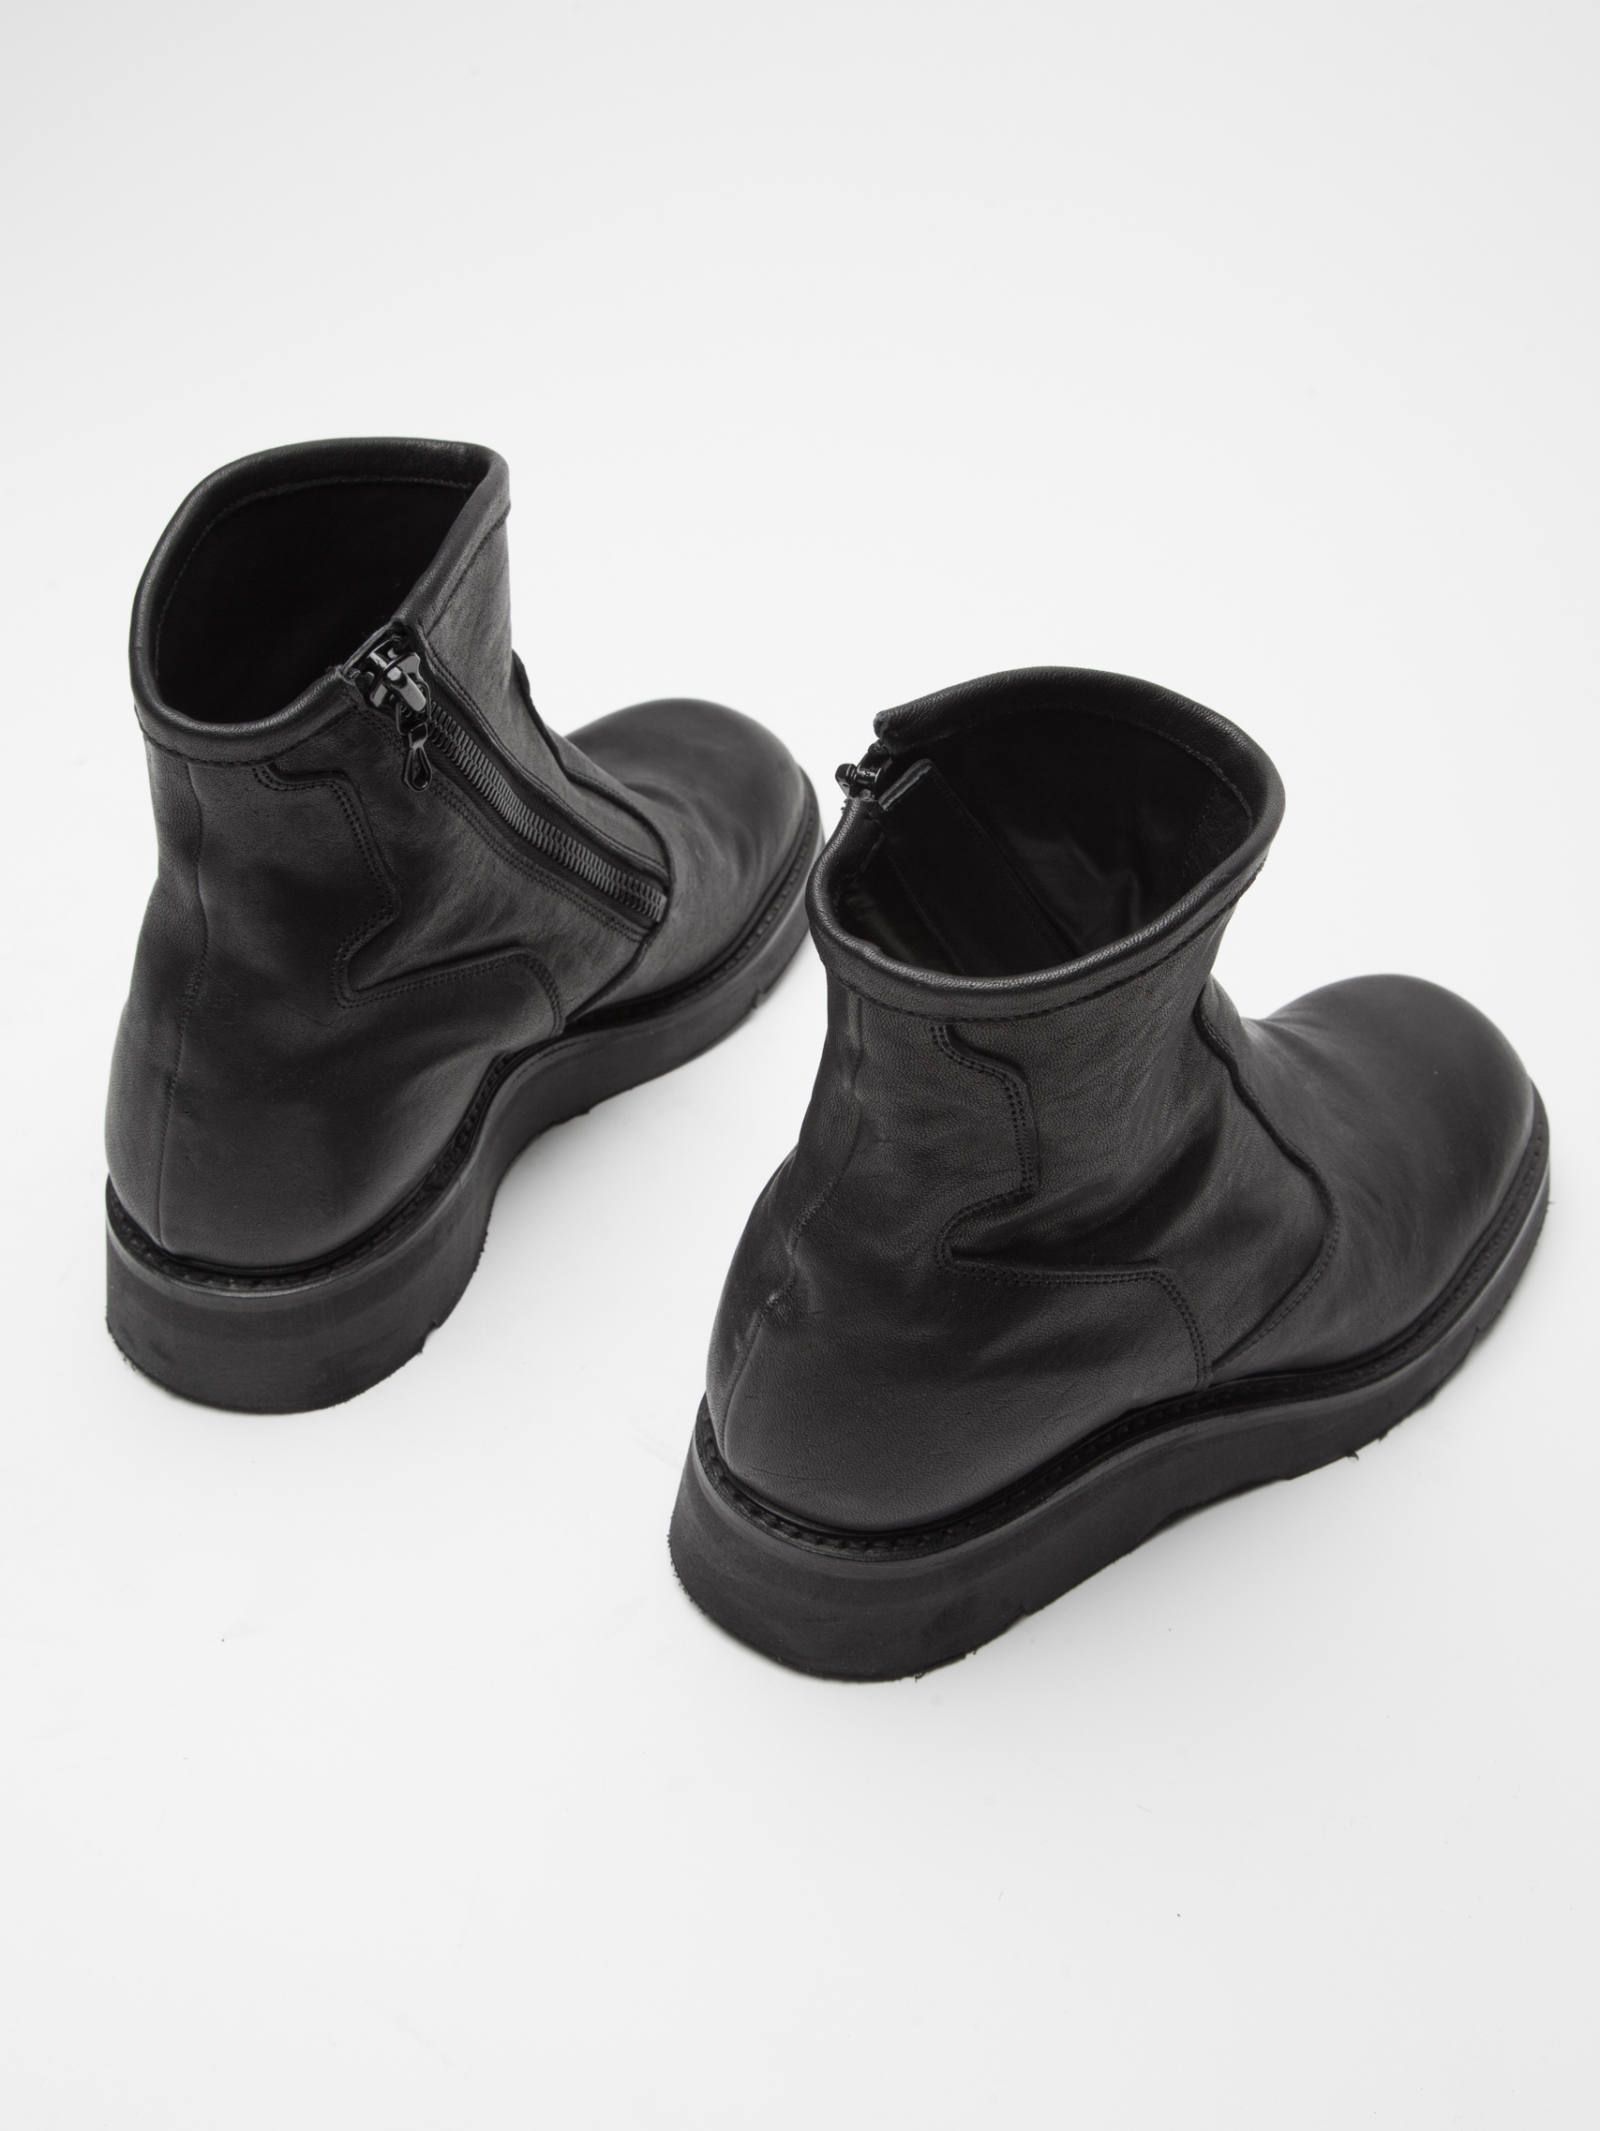 JULIUS - サイドジップエレベーターブーツ - Leather Boots | ADDICT ...